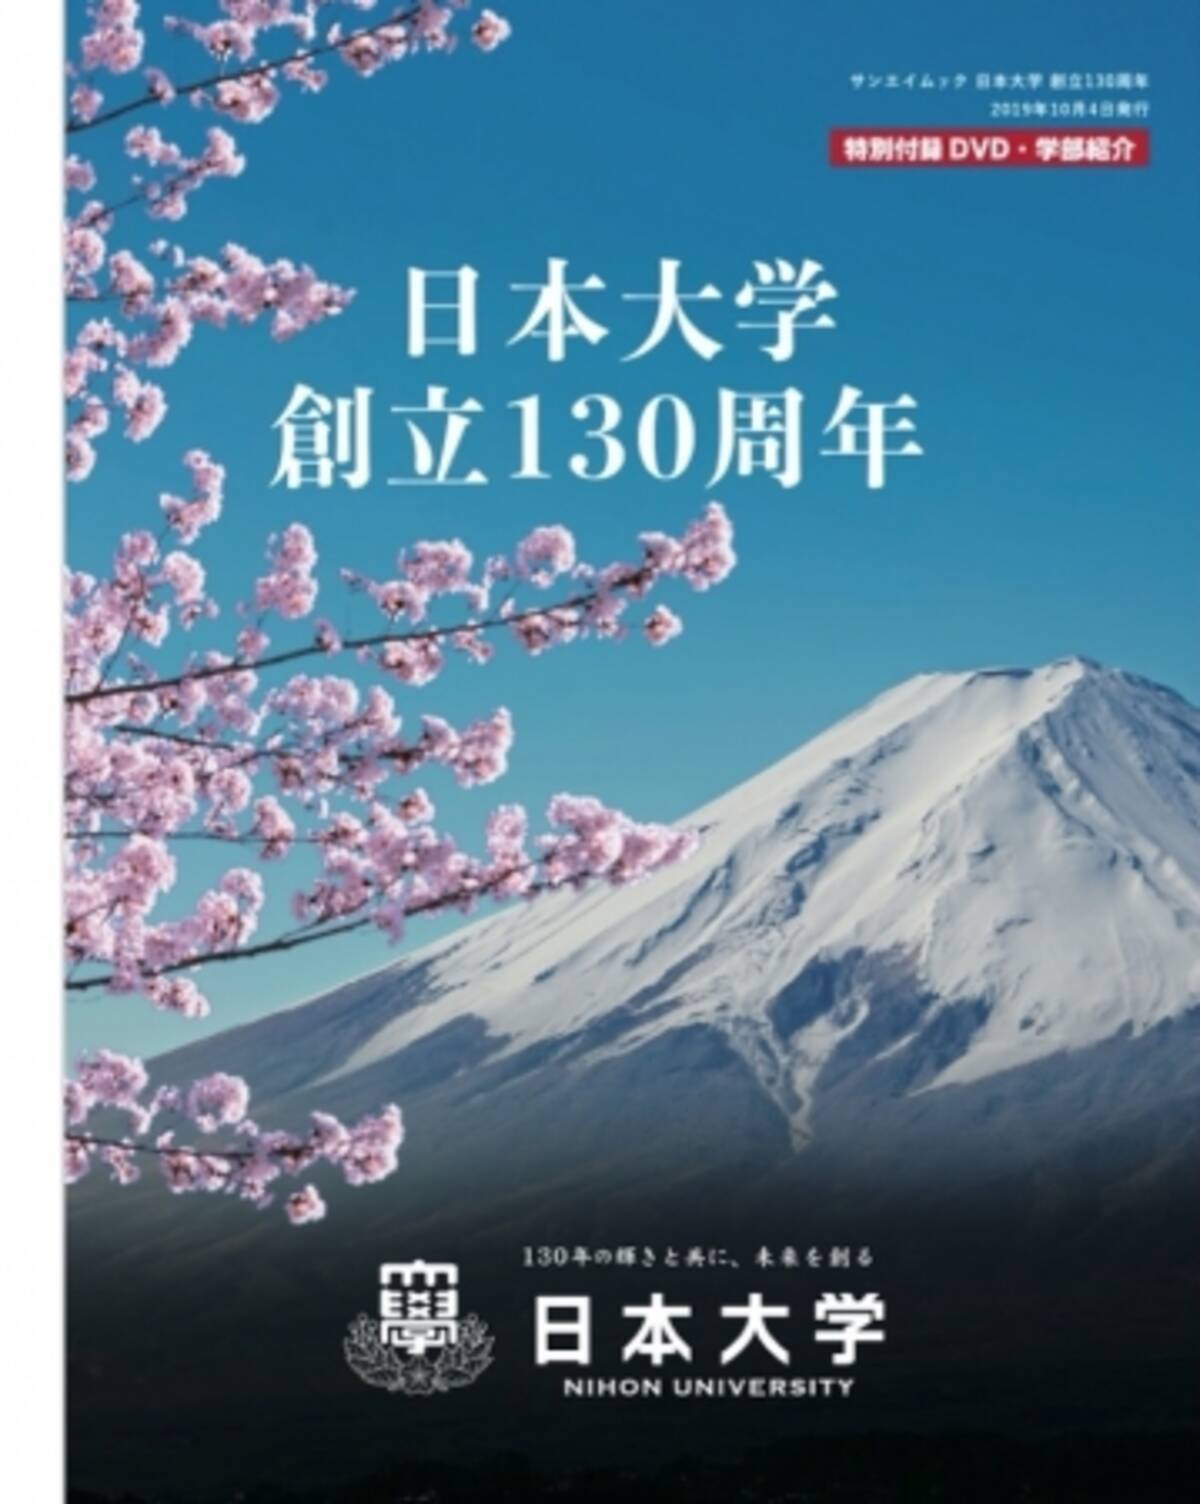 日本大学 創立130周年 発売 発行 株式会社三栄 19年10月2日 エキサイトニュース